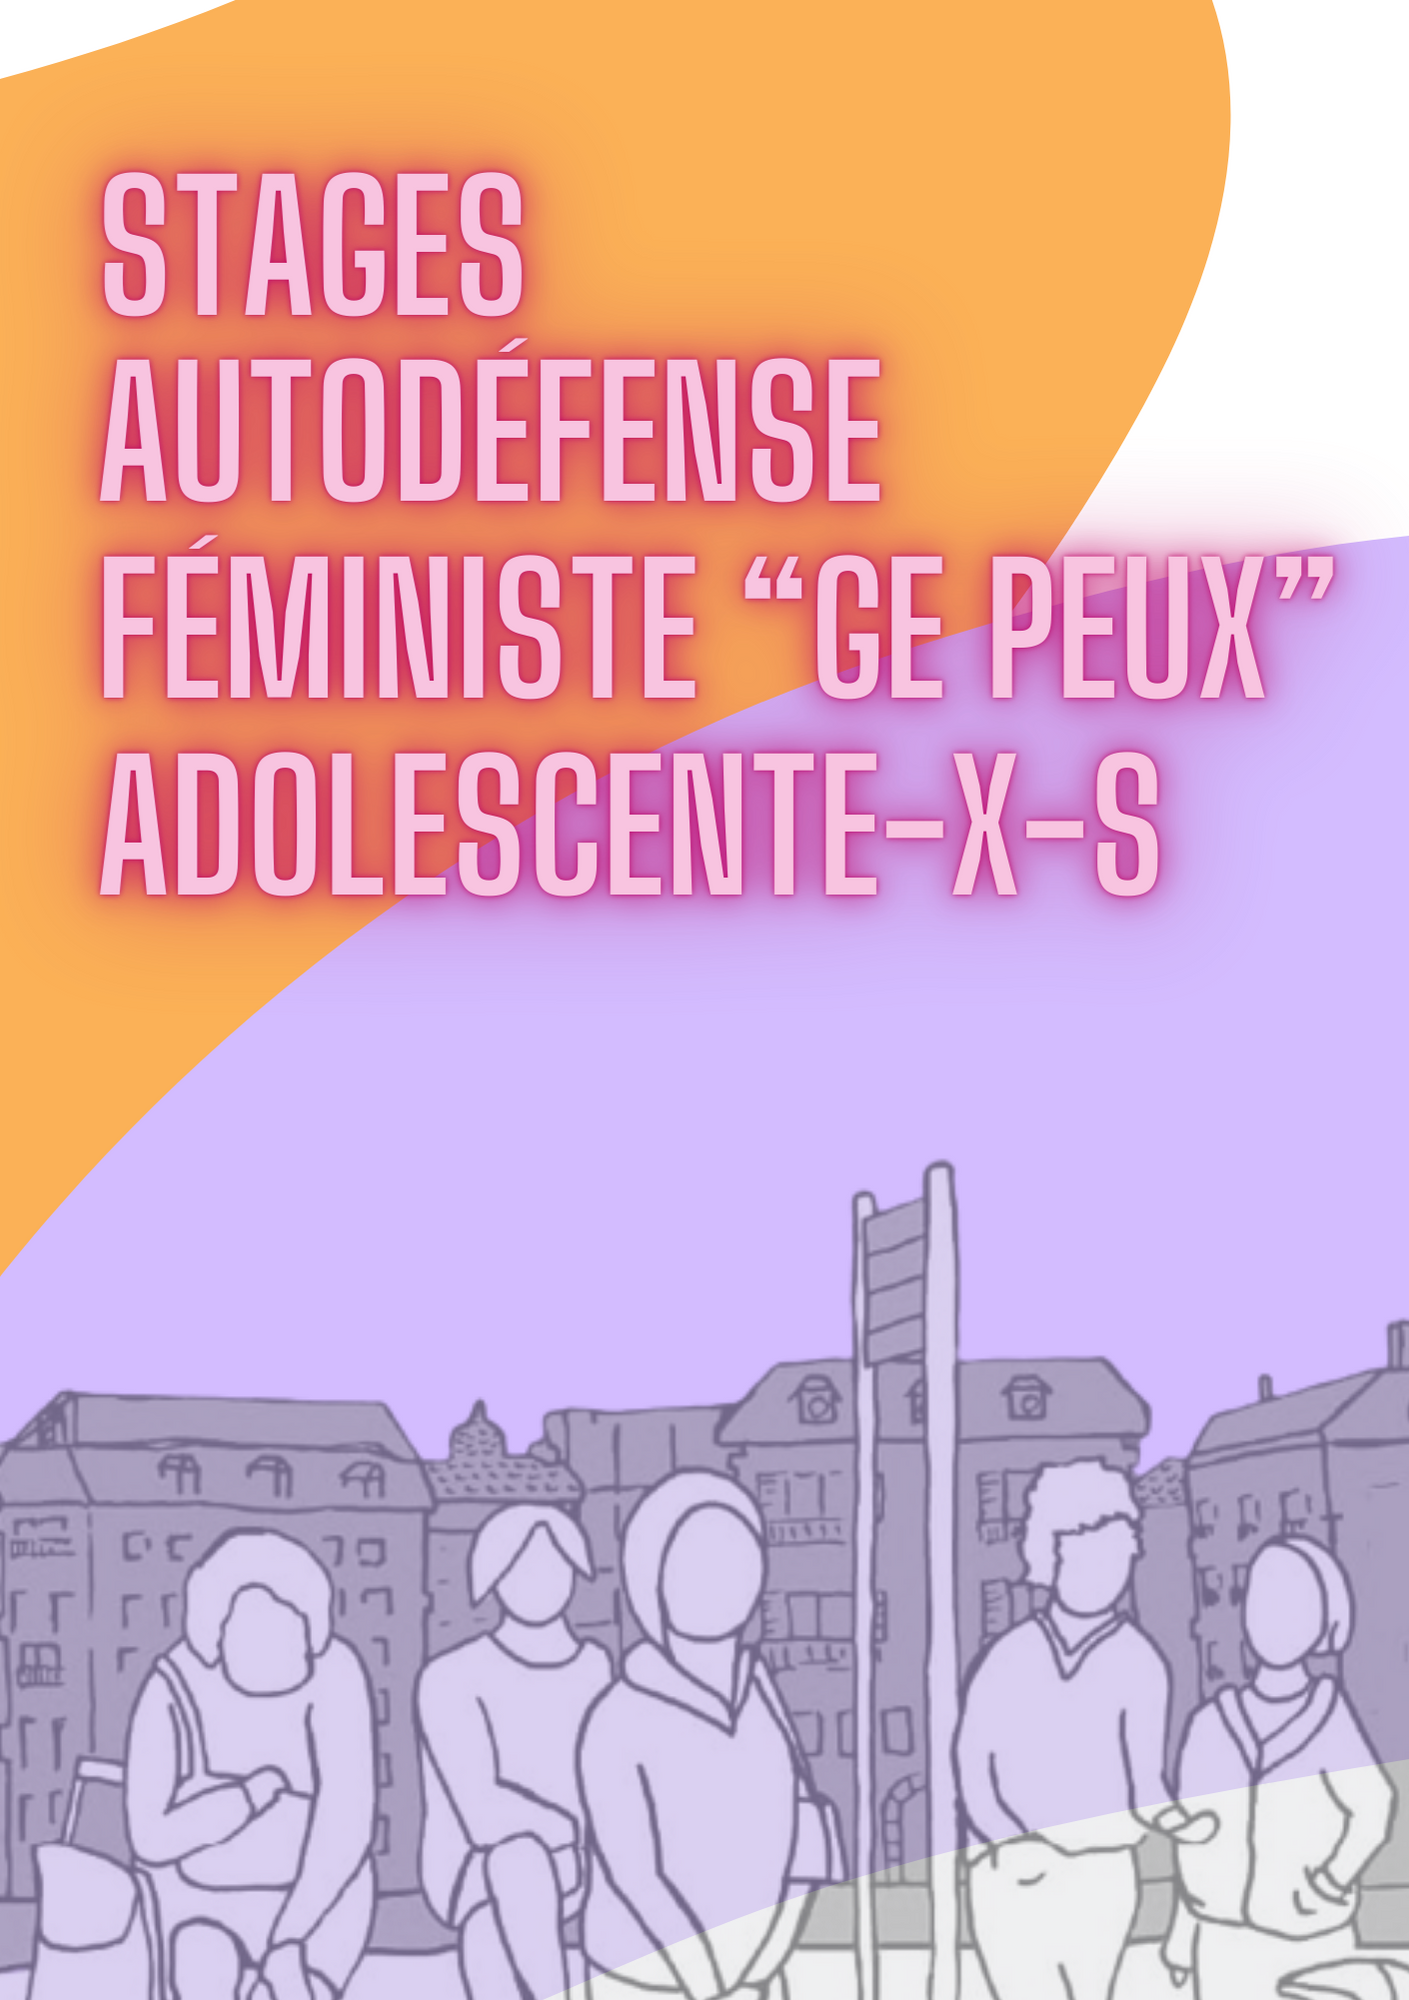 Flyer stage autodéfense féministe adolescent-e-x-s Viol-Secours